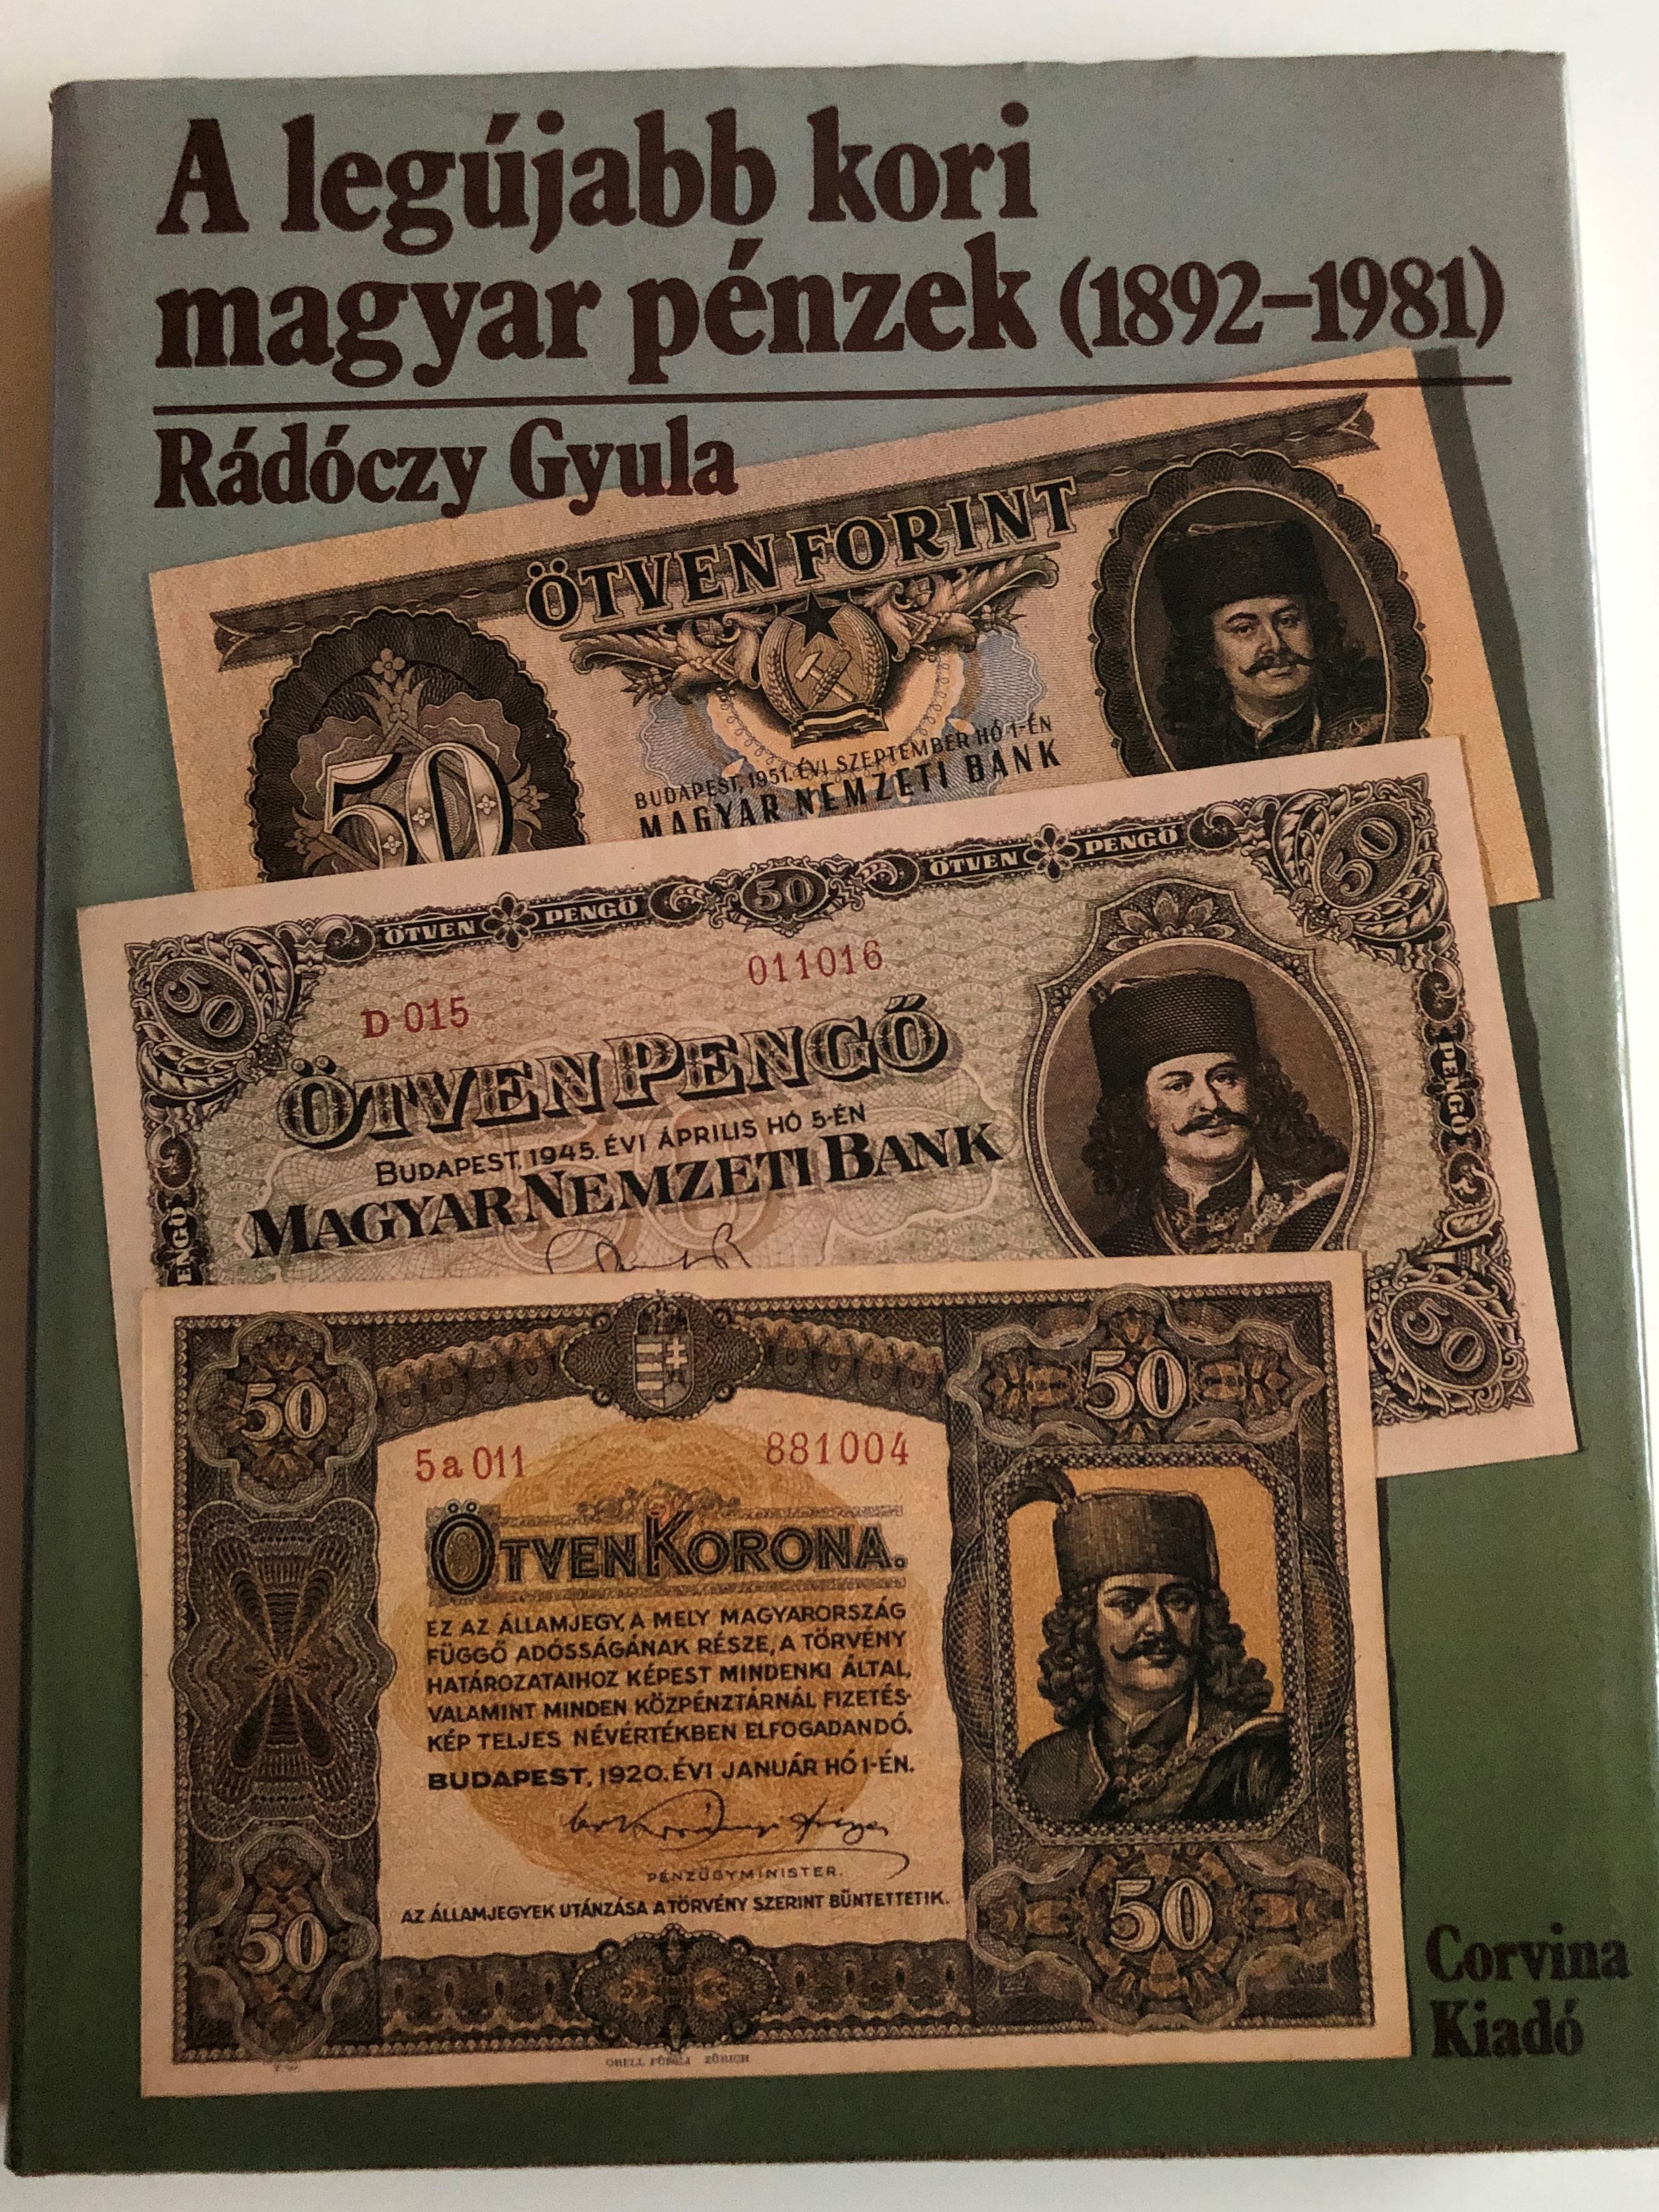 1A legújabb kori magyar pénzek (1892-1981) by Rádóczy Gyula  1.JPG